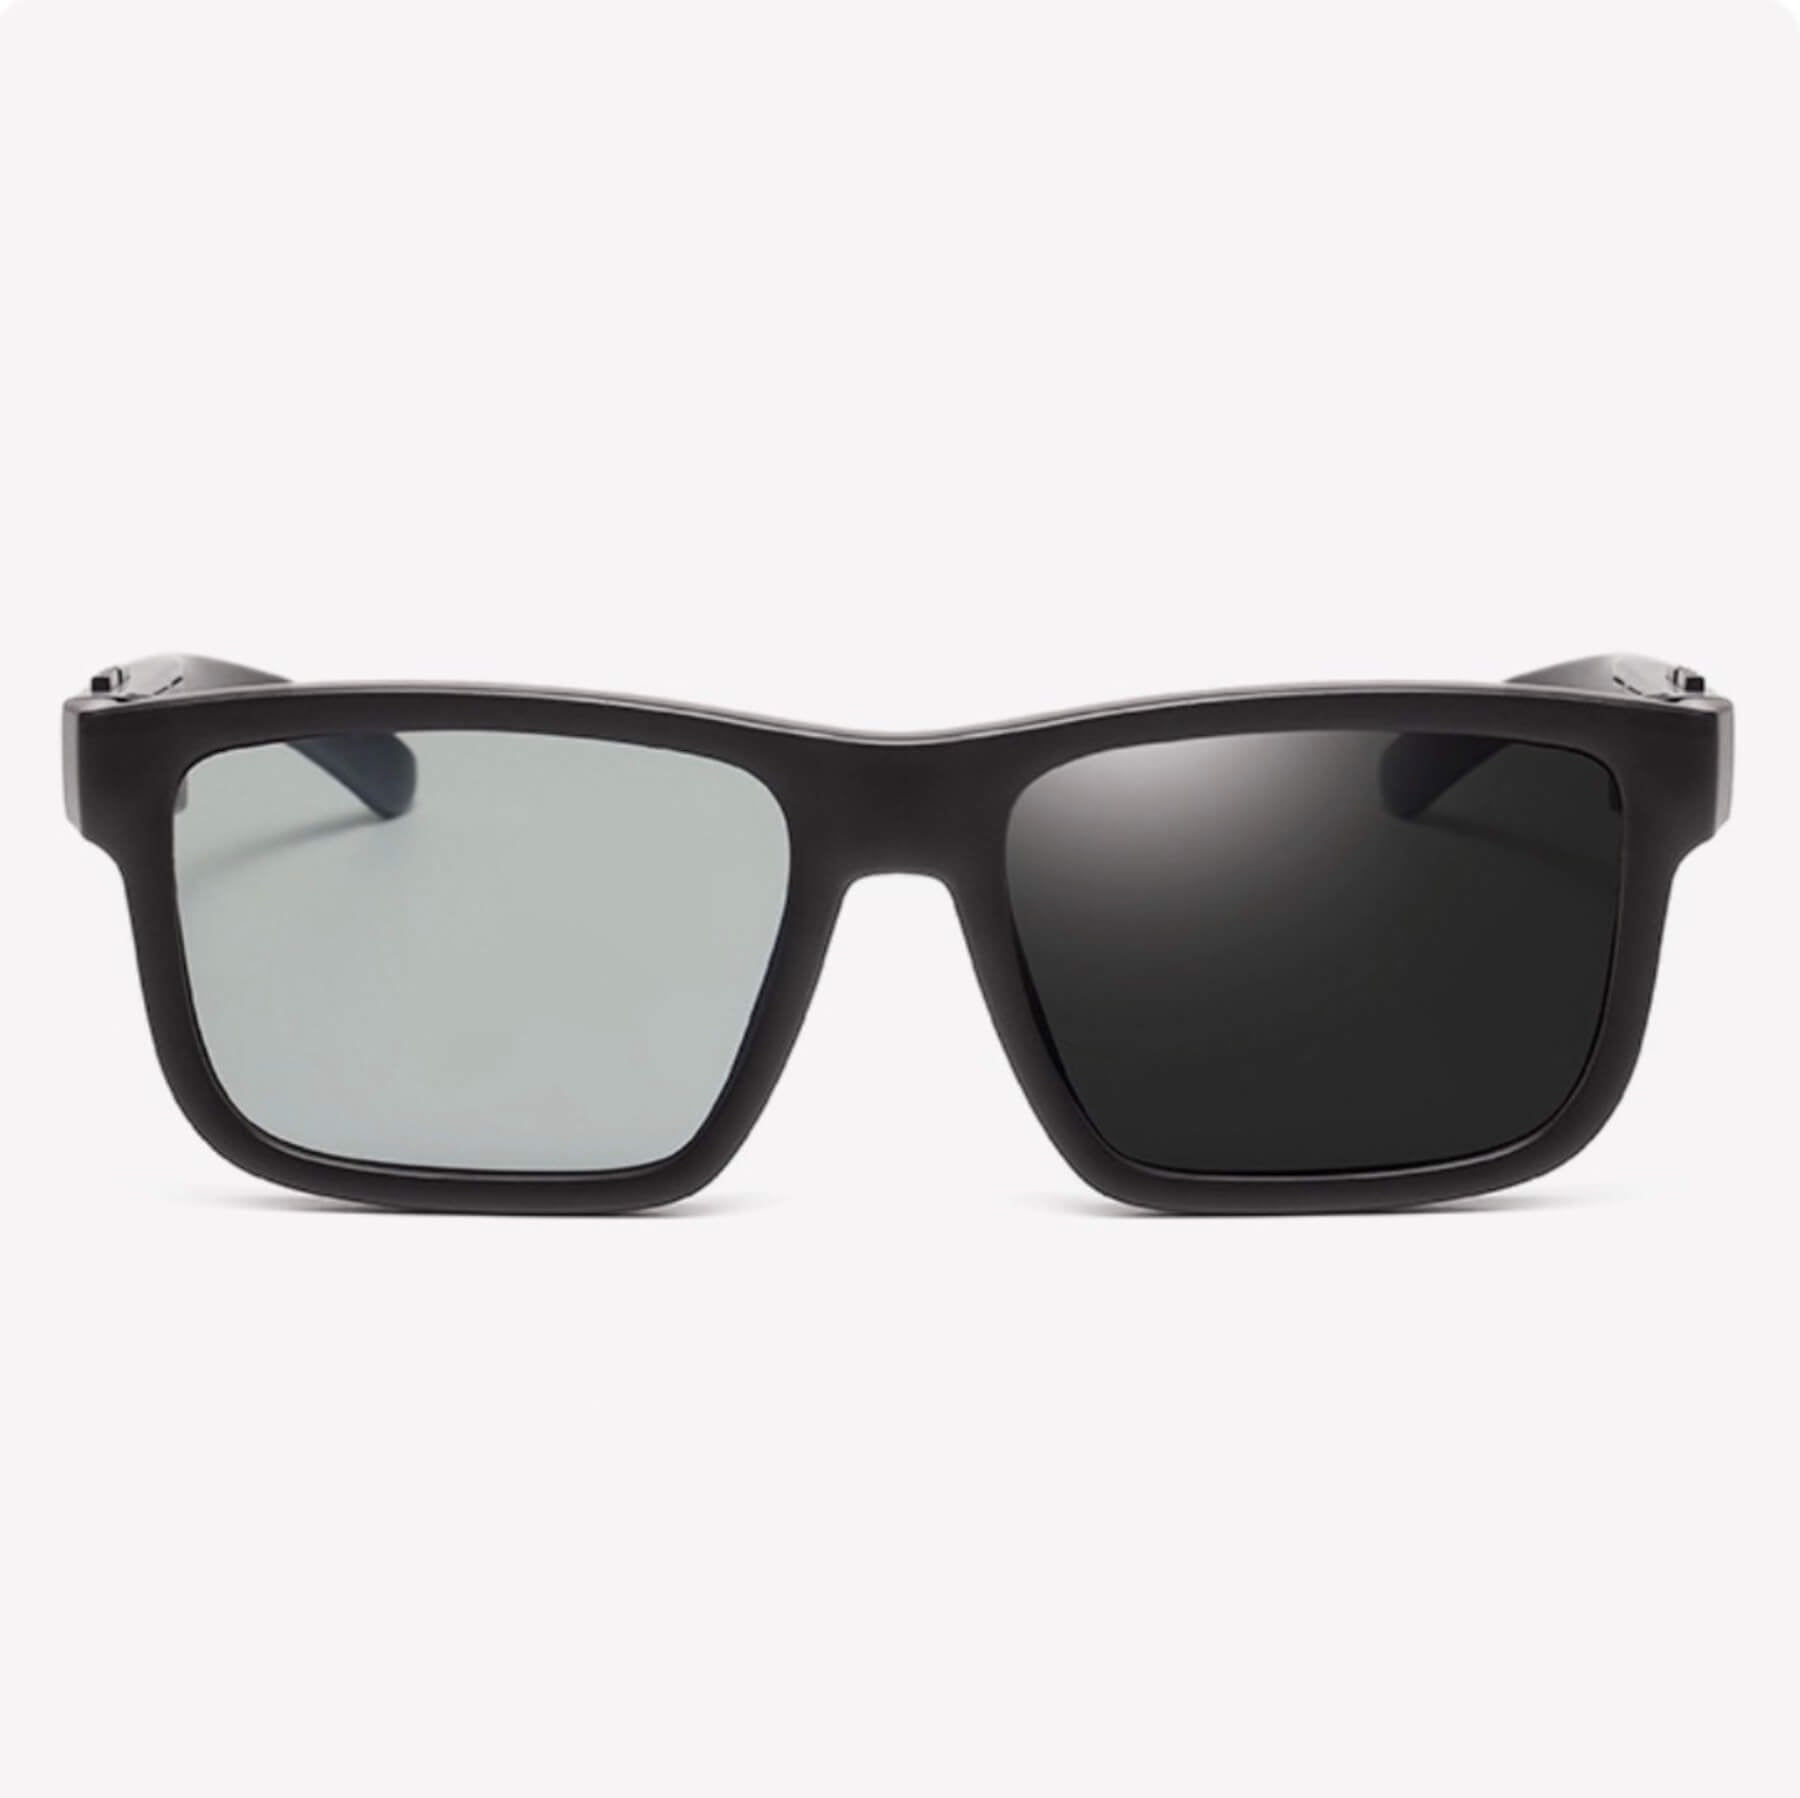 Tint Adjustable Smart Sunglasses